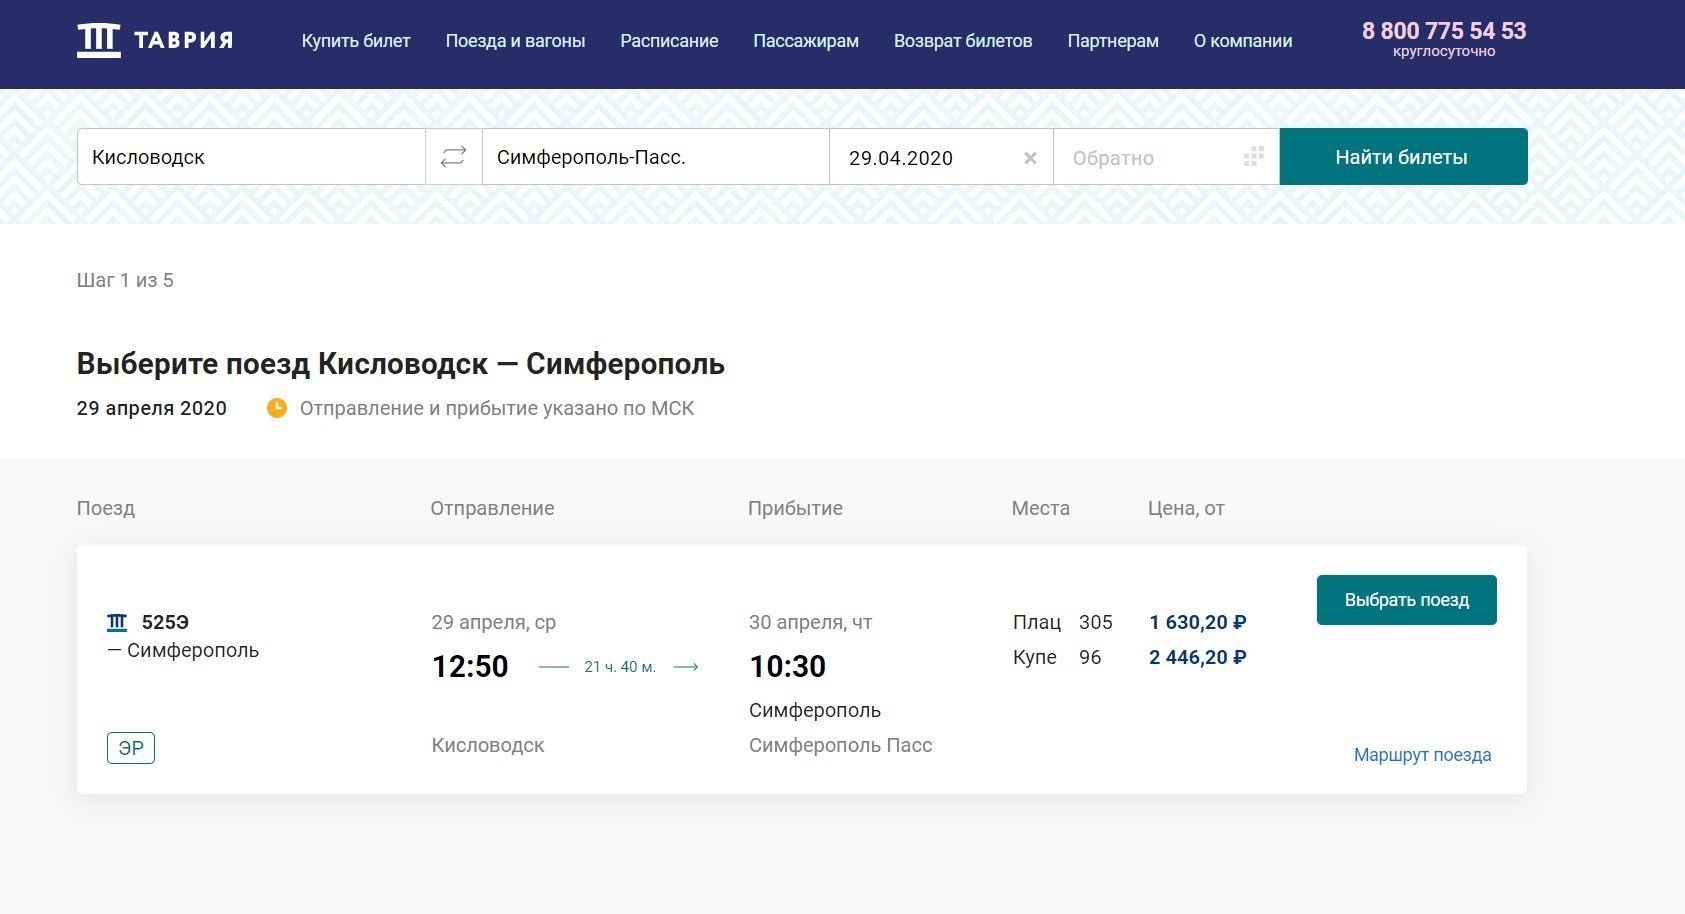 Продажа билетов на поезд Кисловодск - Симферополь